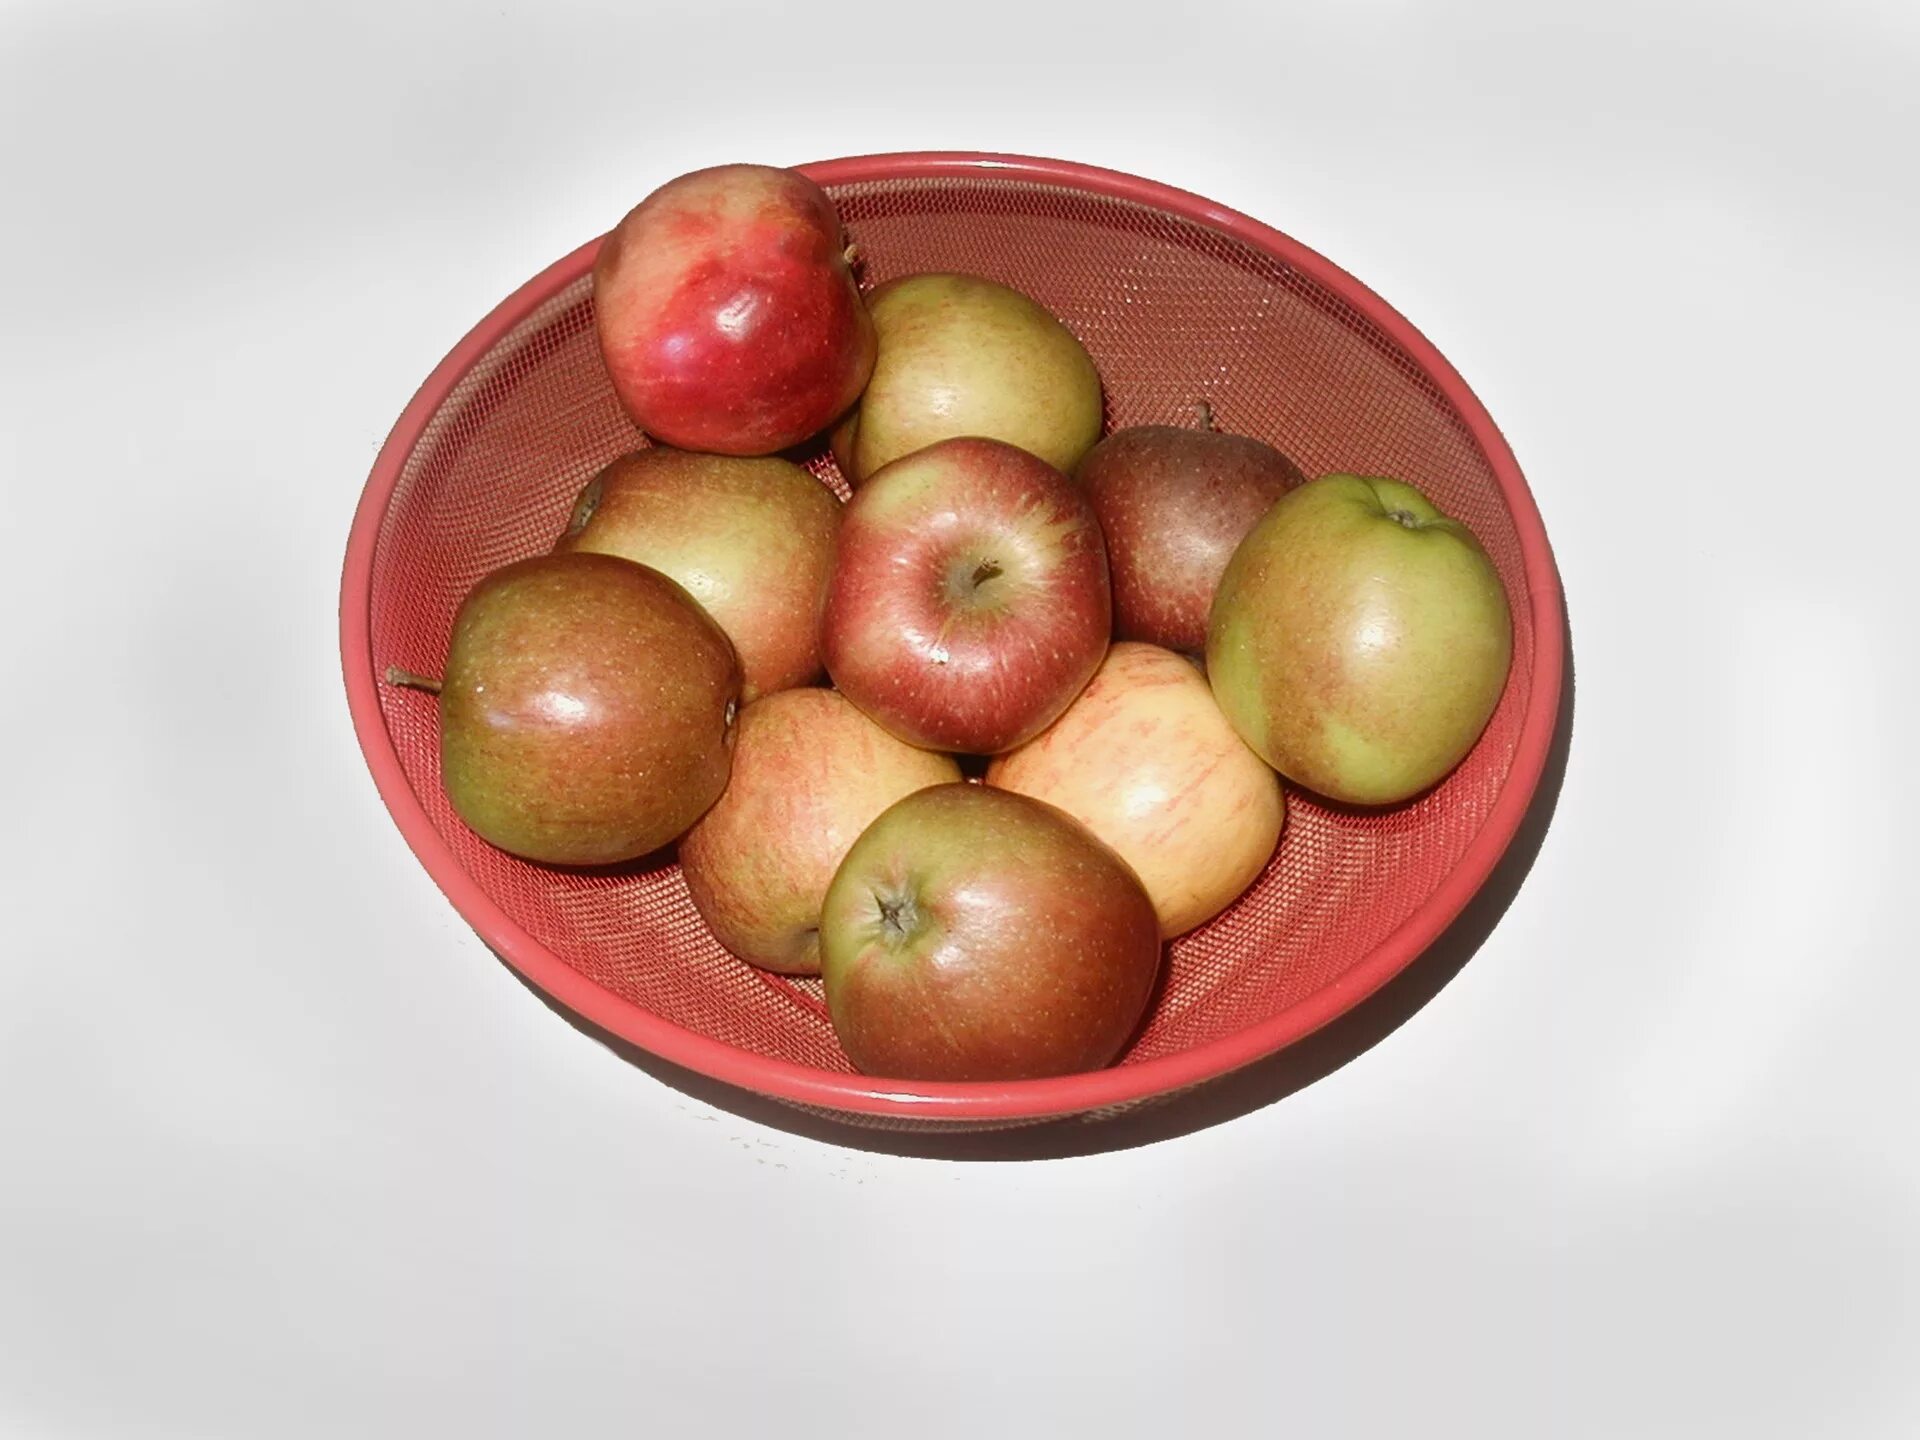 Яблоко 10 минут. «Ваза с яблоками» (модифицированная проба ж.Пиаже; Флейвелл, 1967).. Яблоко на тарелке. Миска с яблоками. Ваза с яблоками.